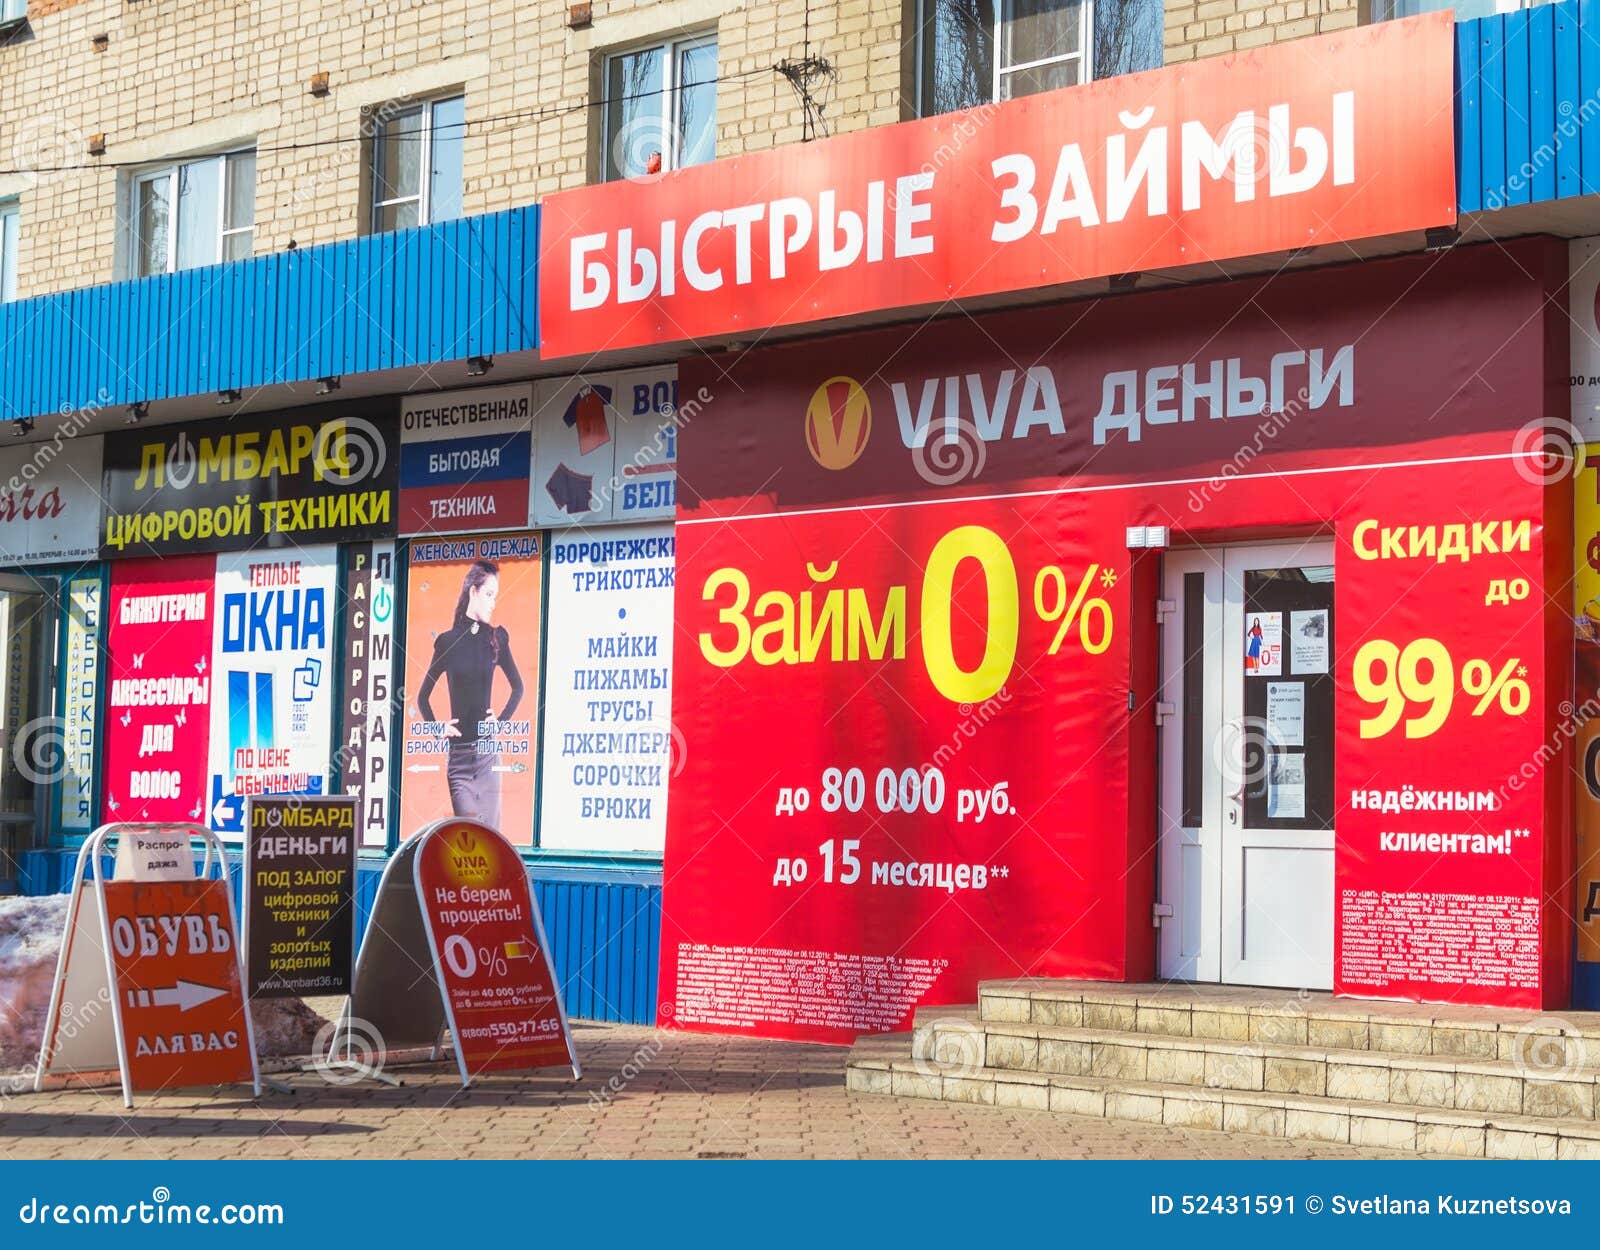 Займы онлайн в Новомосковске новые без проверки